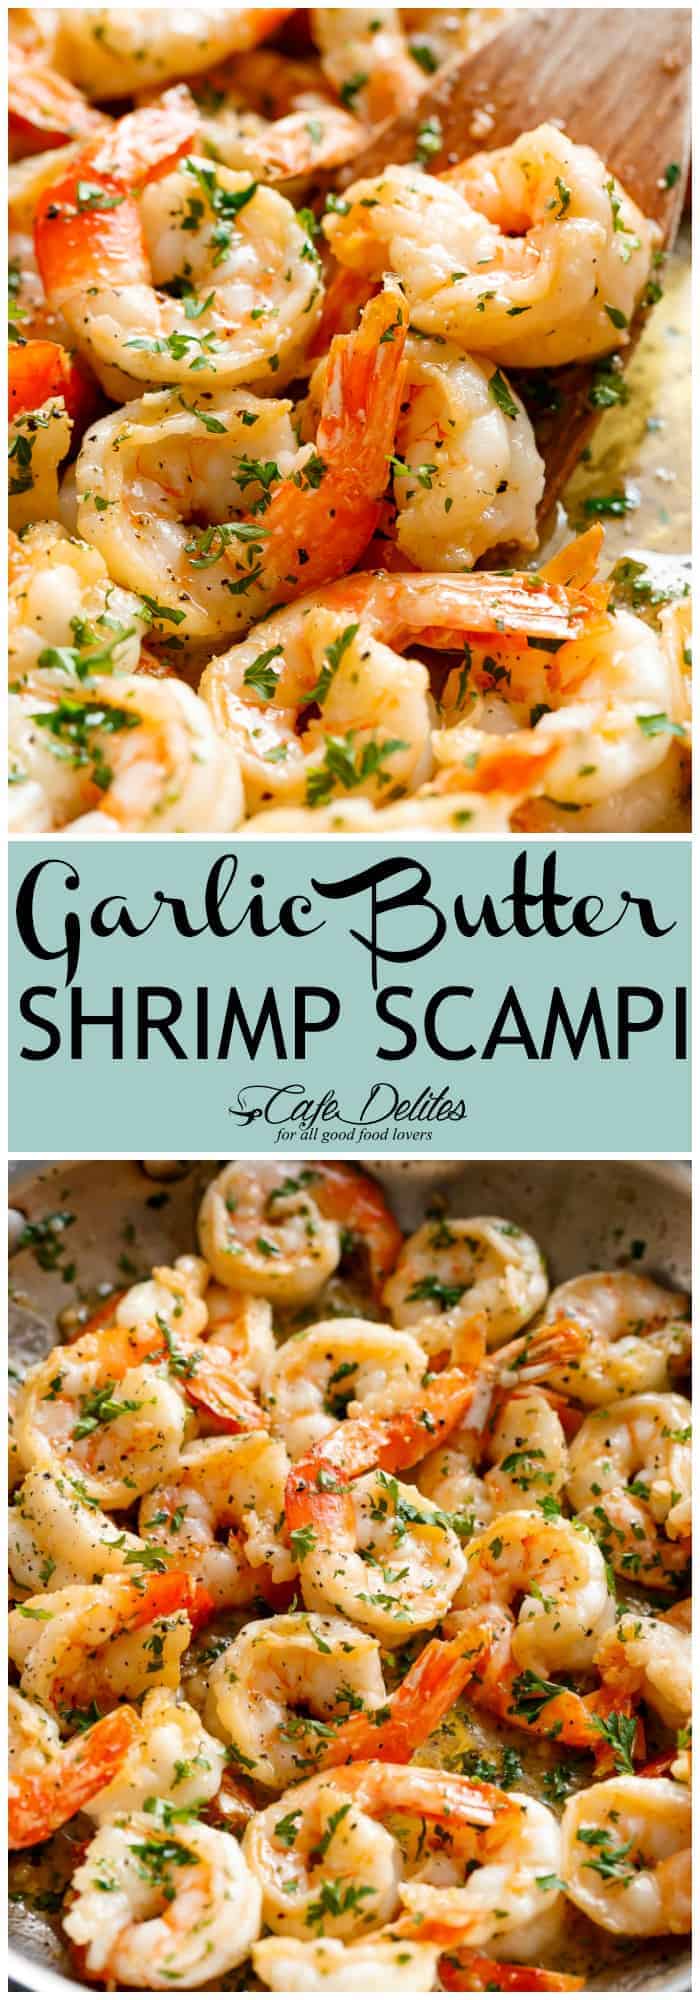 Garlic Butter Shrimp Scampi - Cafe Delites